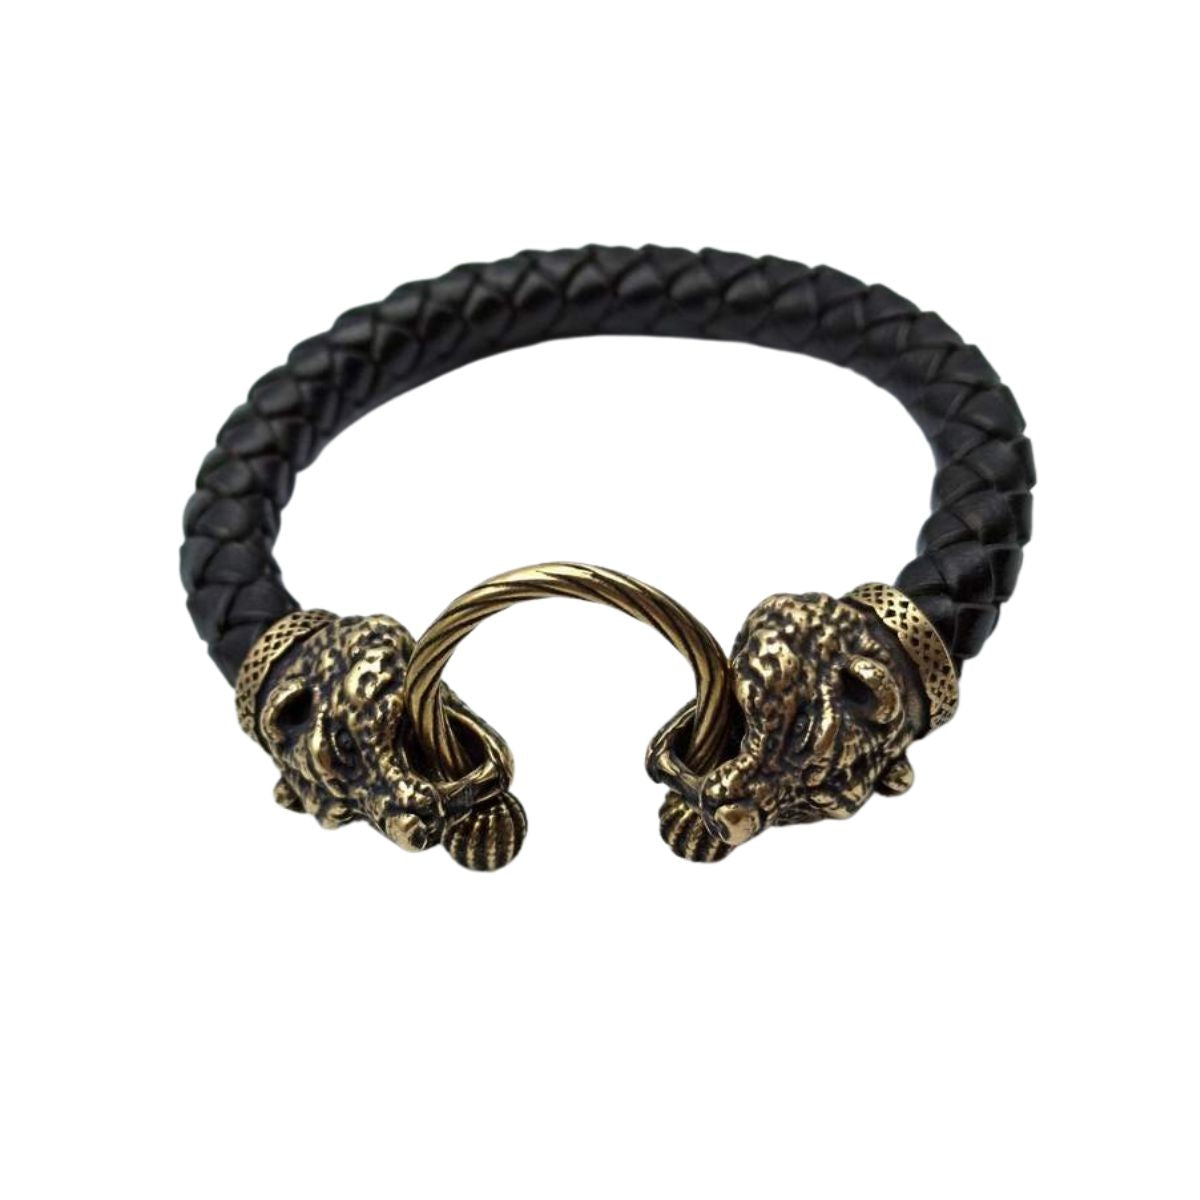 Bear head leather bracelet